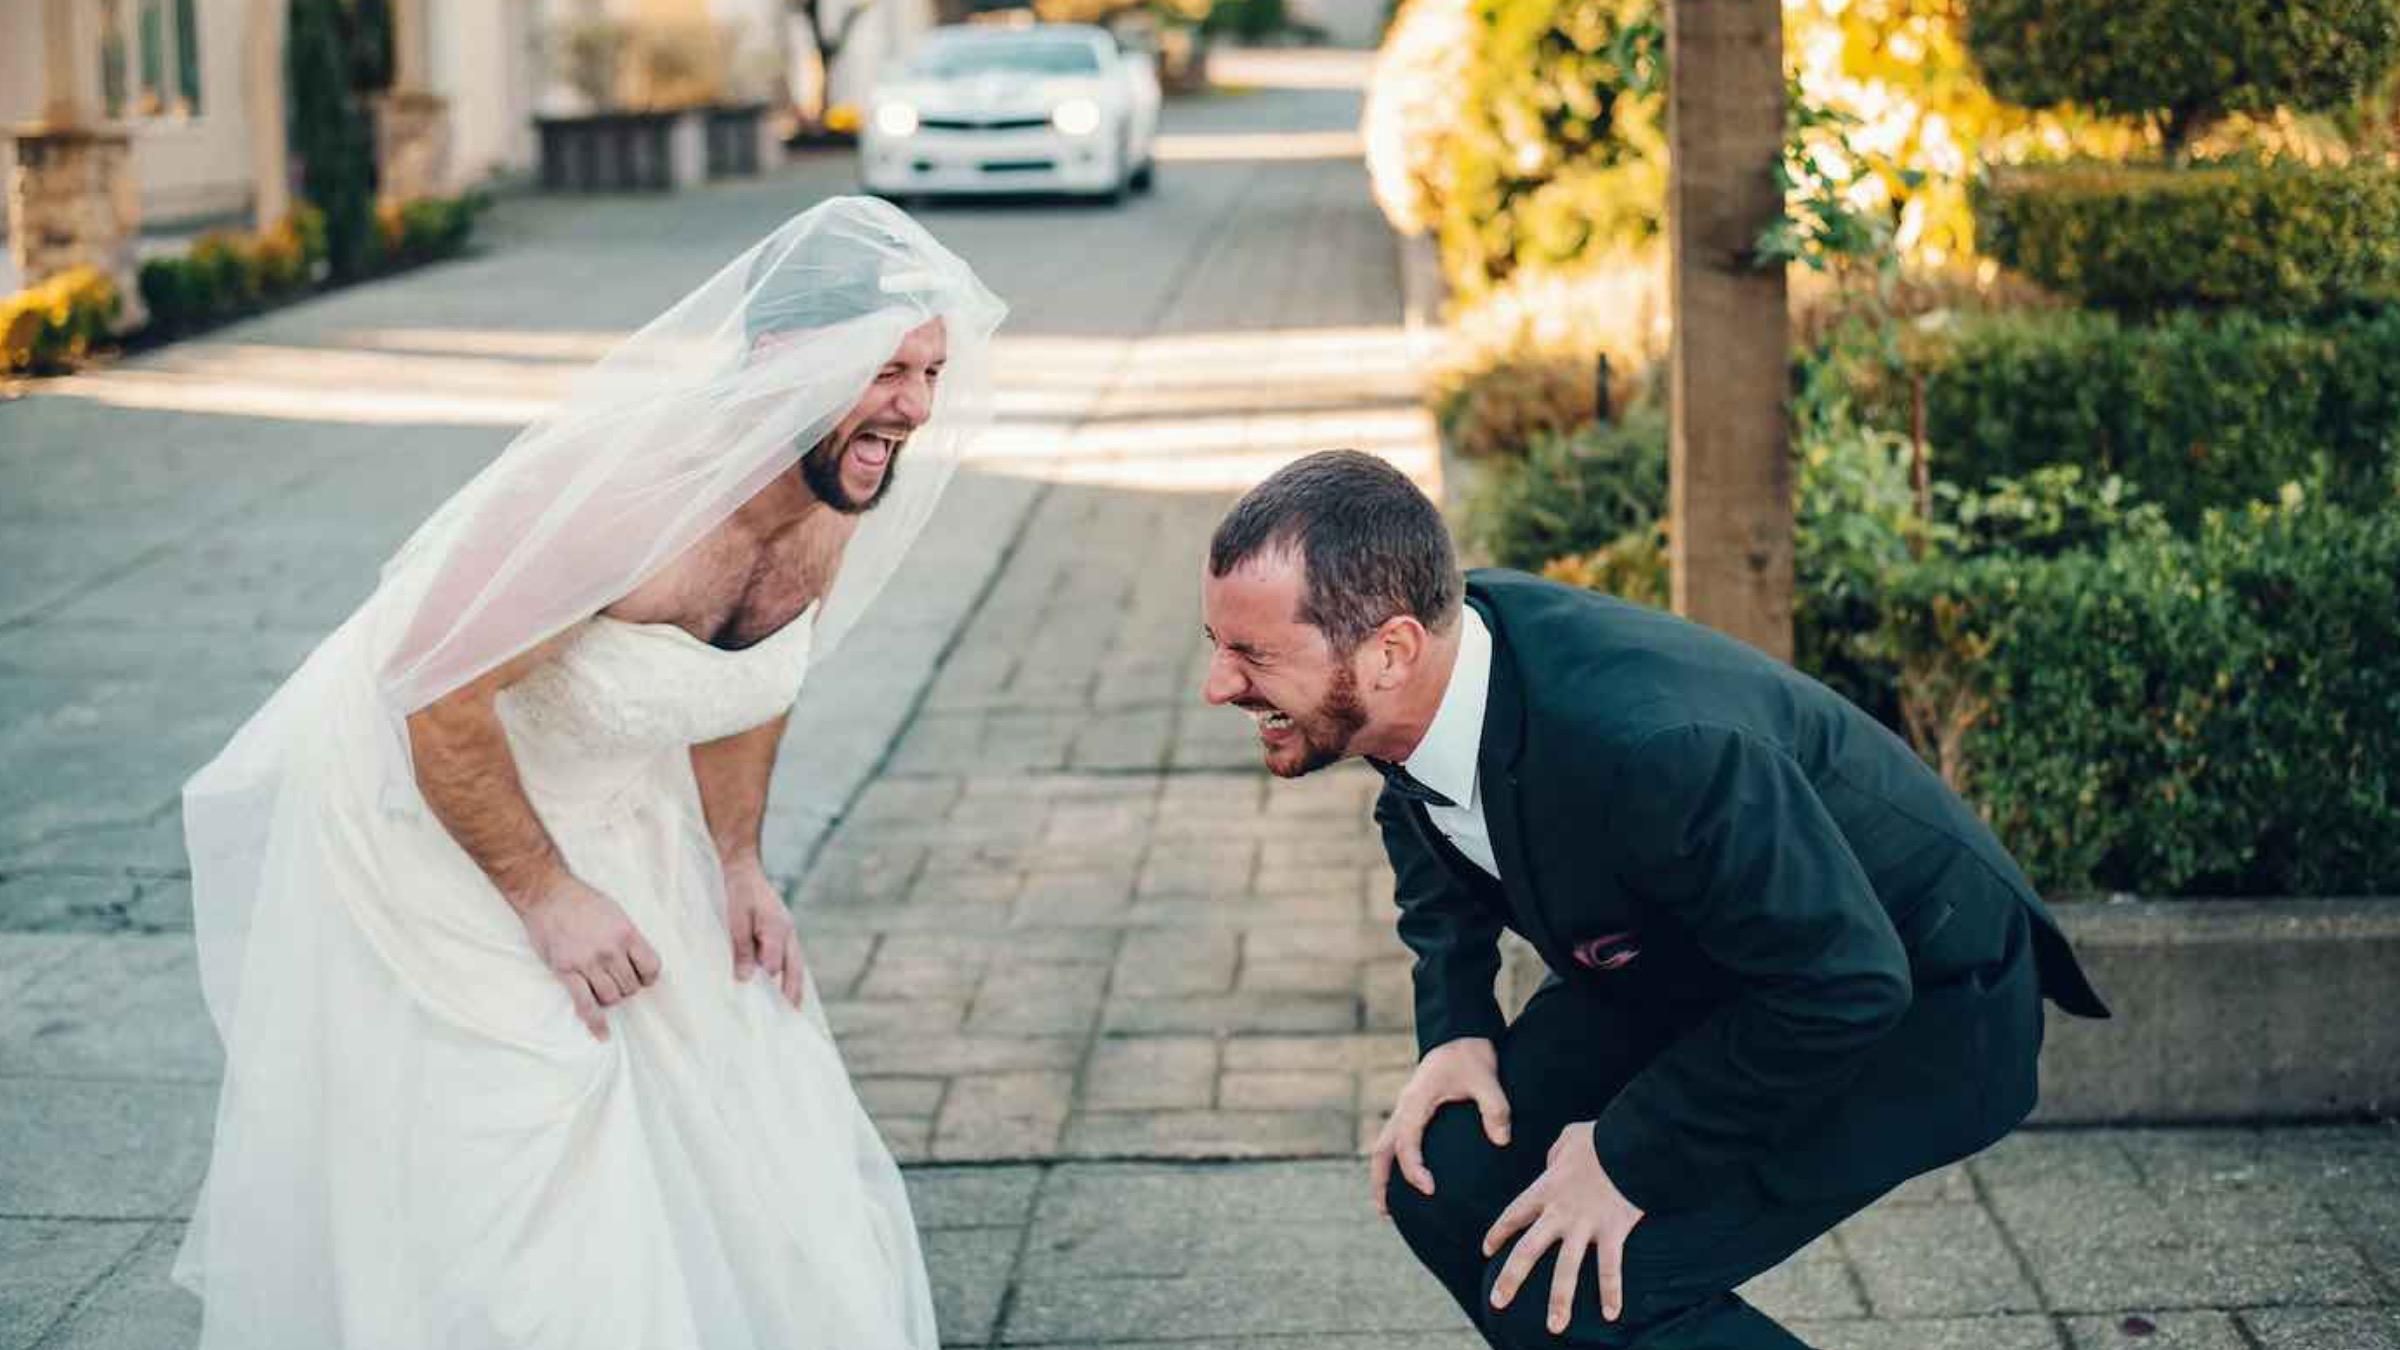 Лучший друг в платье вместо невесты: как разыграли жениха на свадьбе